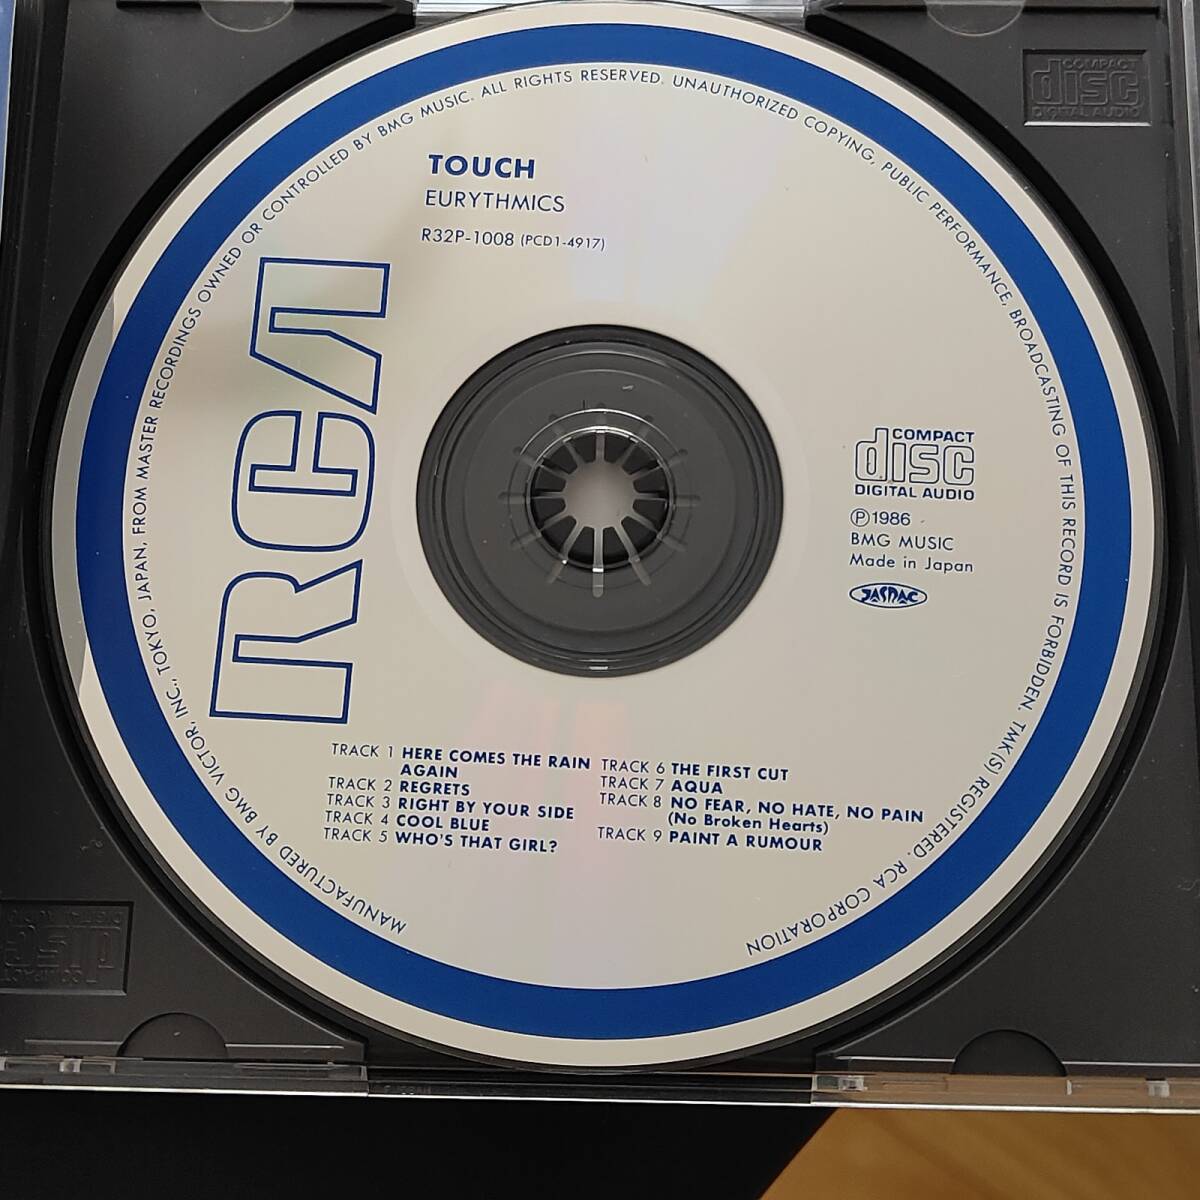 ユーリズミックス タッチ EURYTHMICS TOUCH 定価￥3,200 税込み表記なしの初期盤 旧規格 RCA BMGビクター R32P-1008_画像5